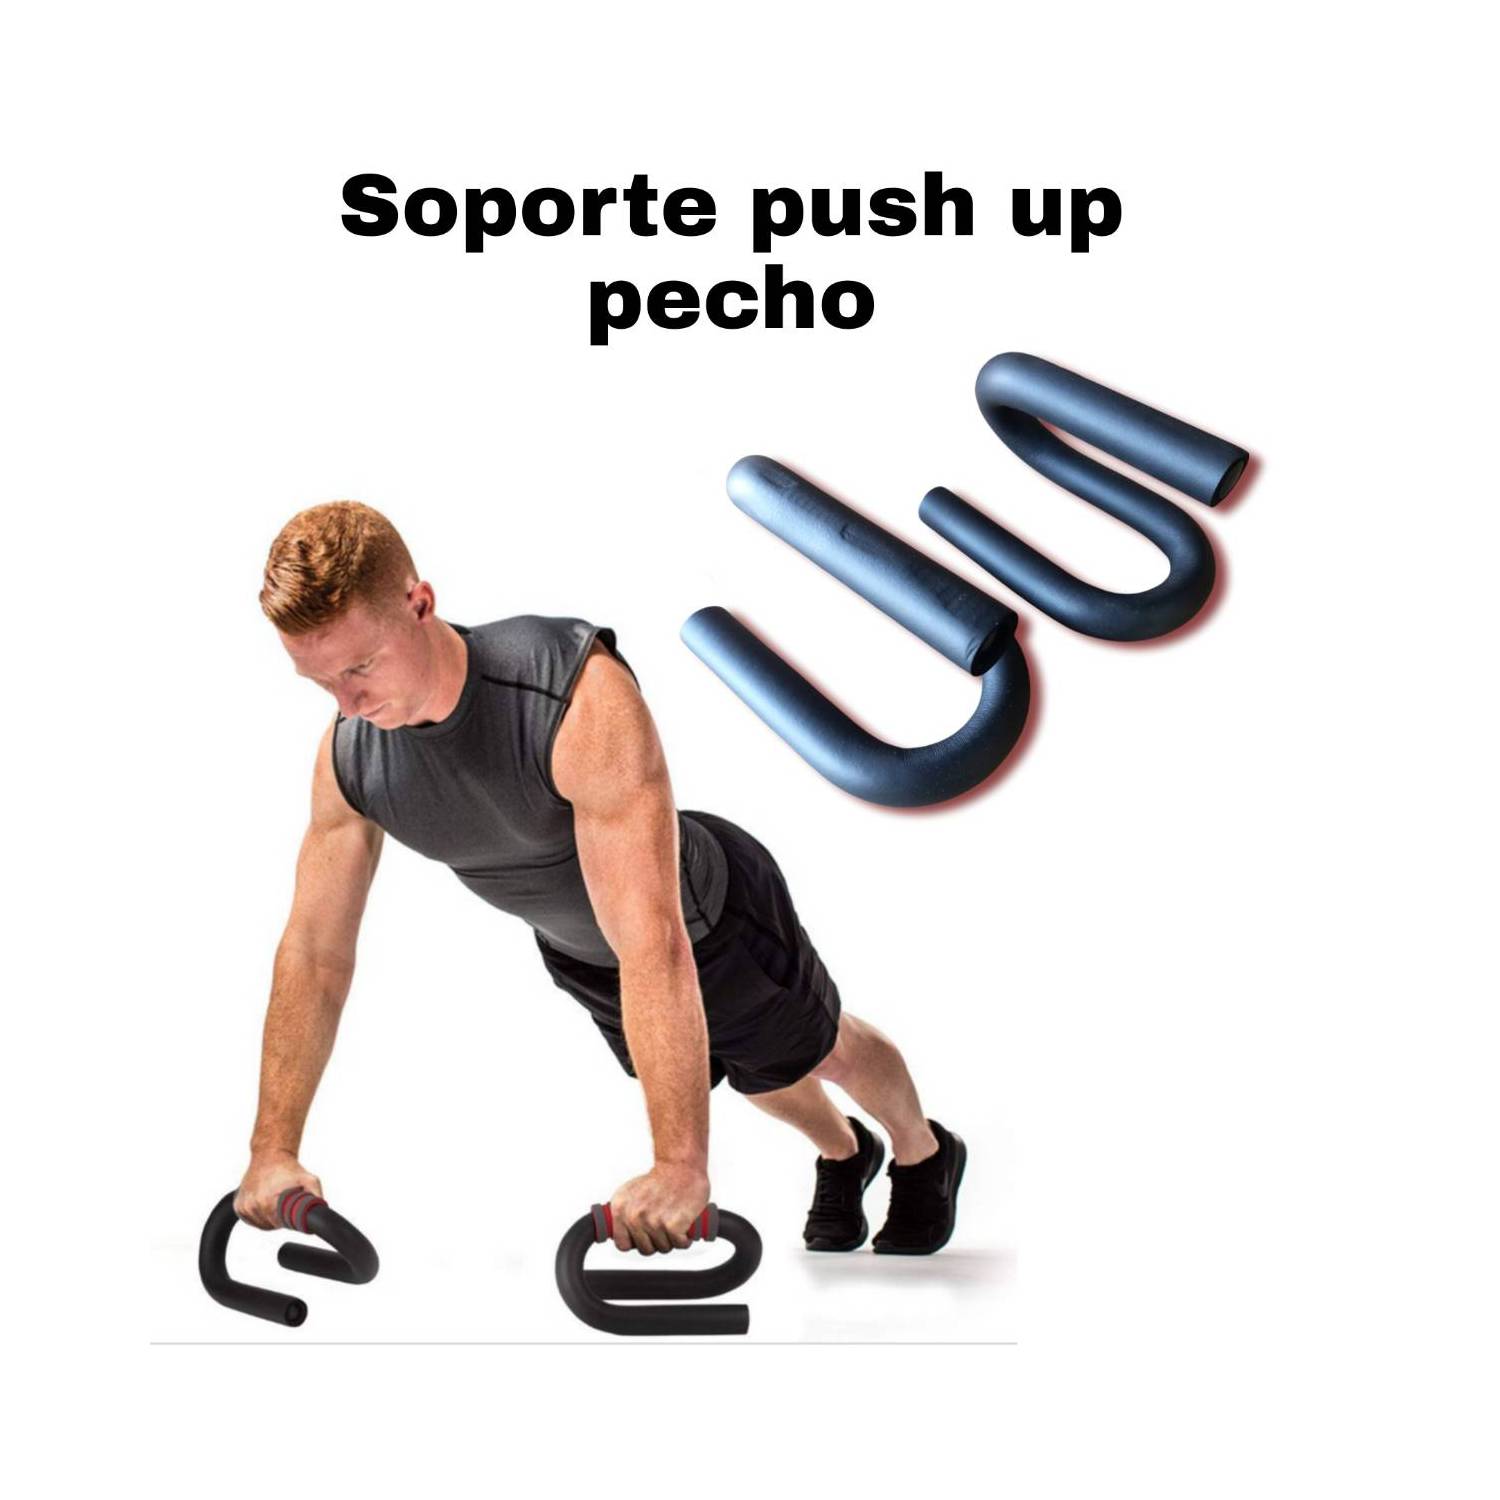 Soporte,Flexiones,Pecho,Ejercicio,Barra,Lagartijas,Gym,Push,Up